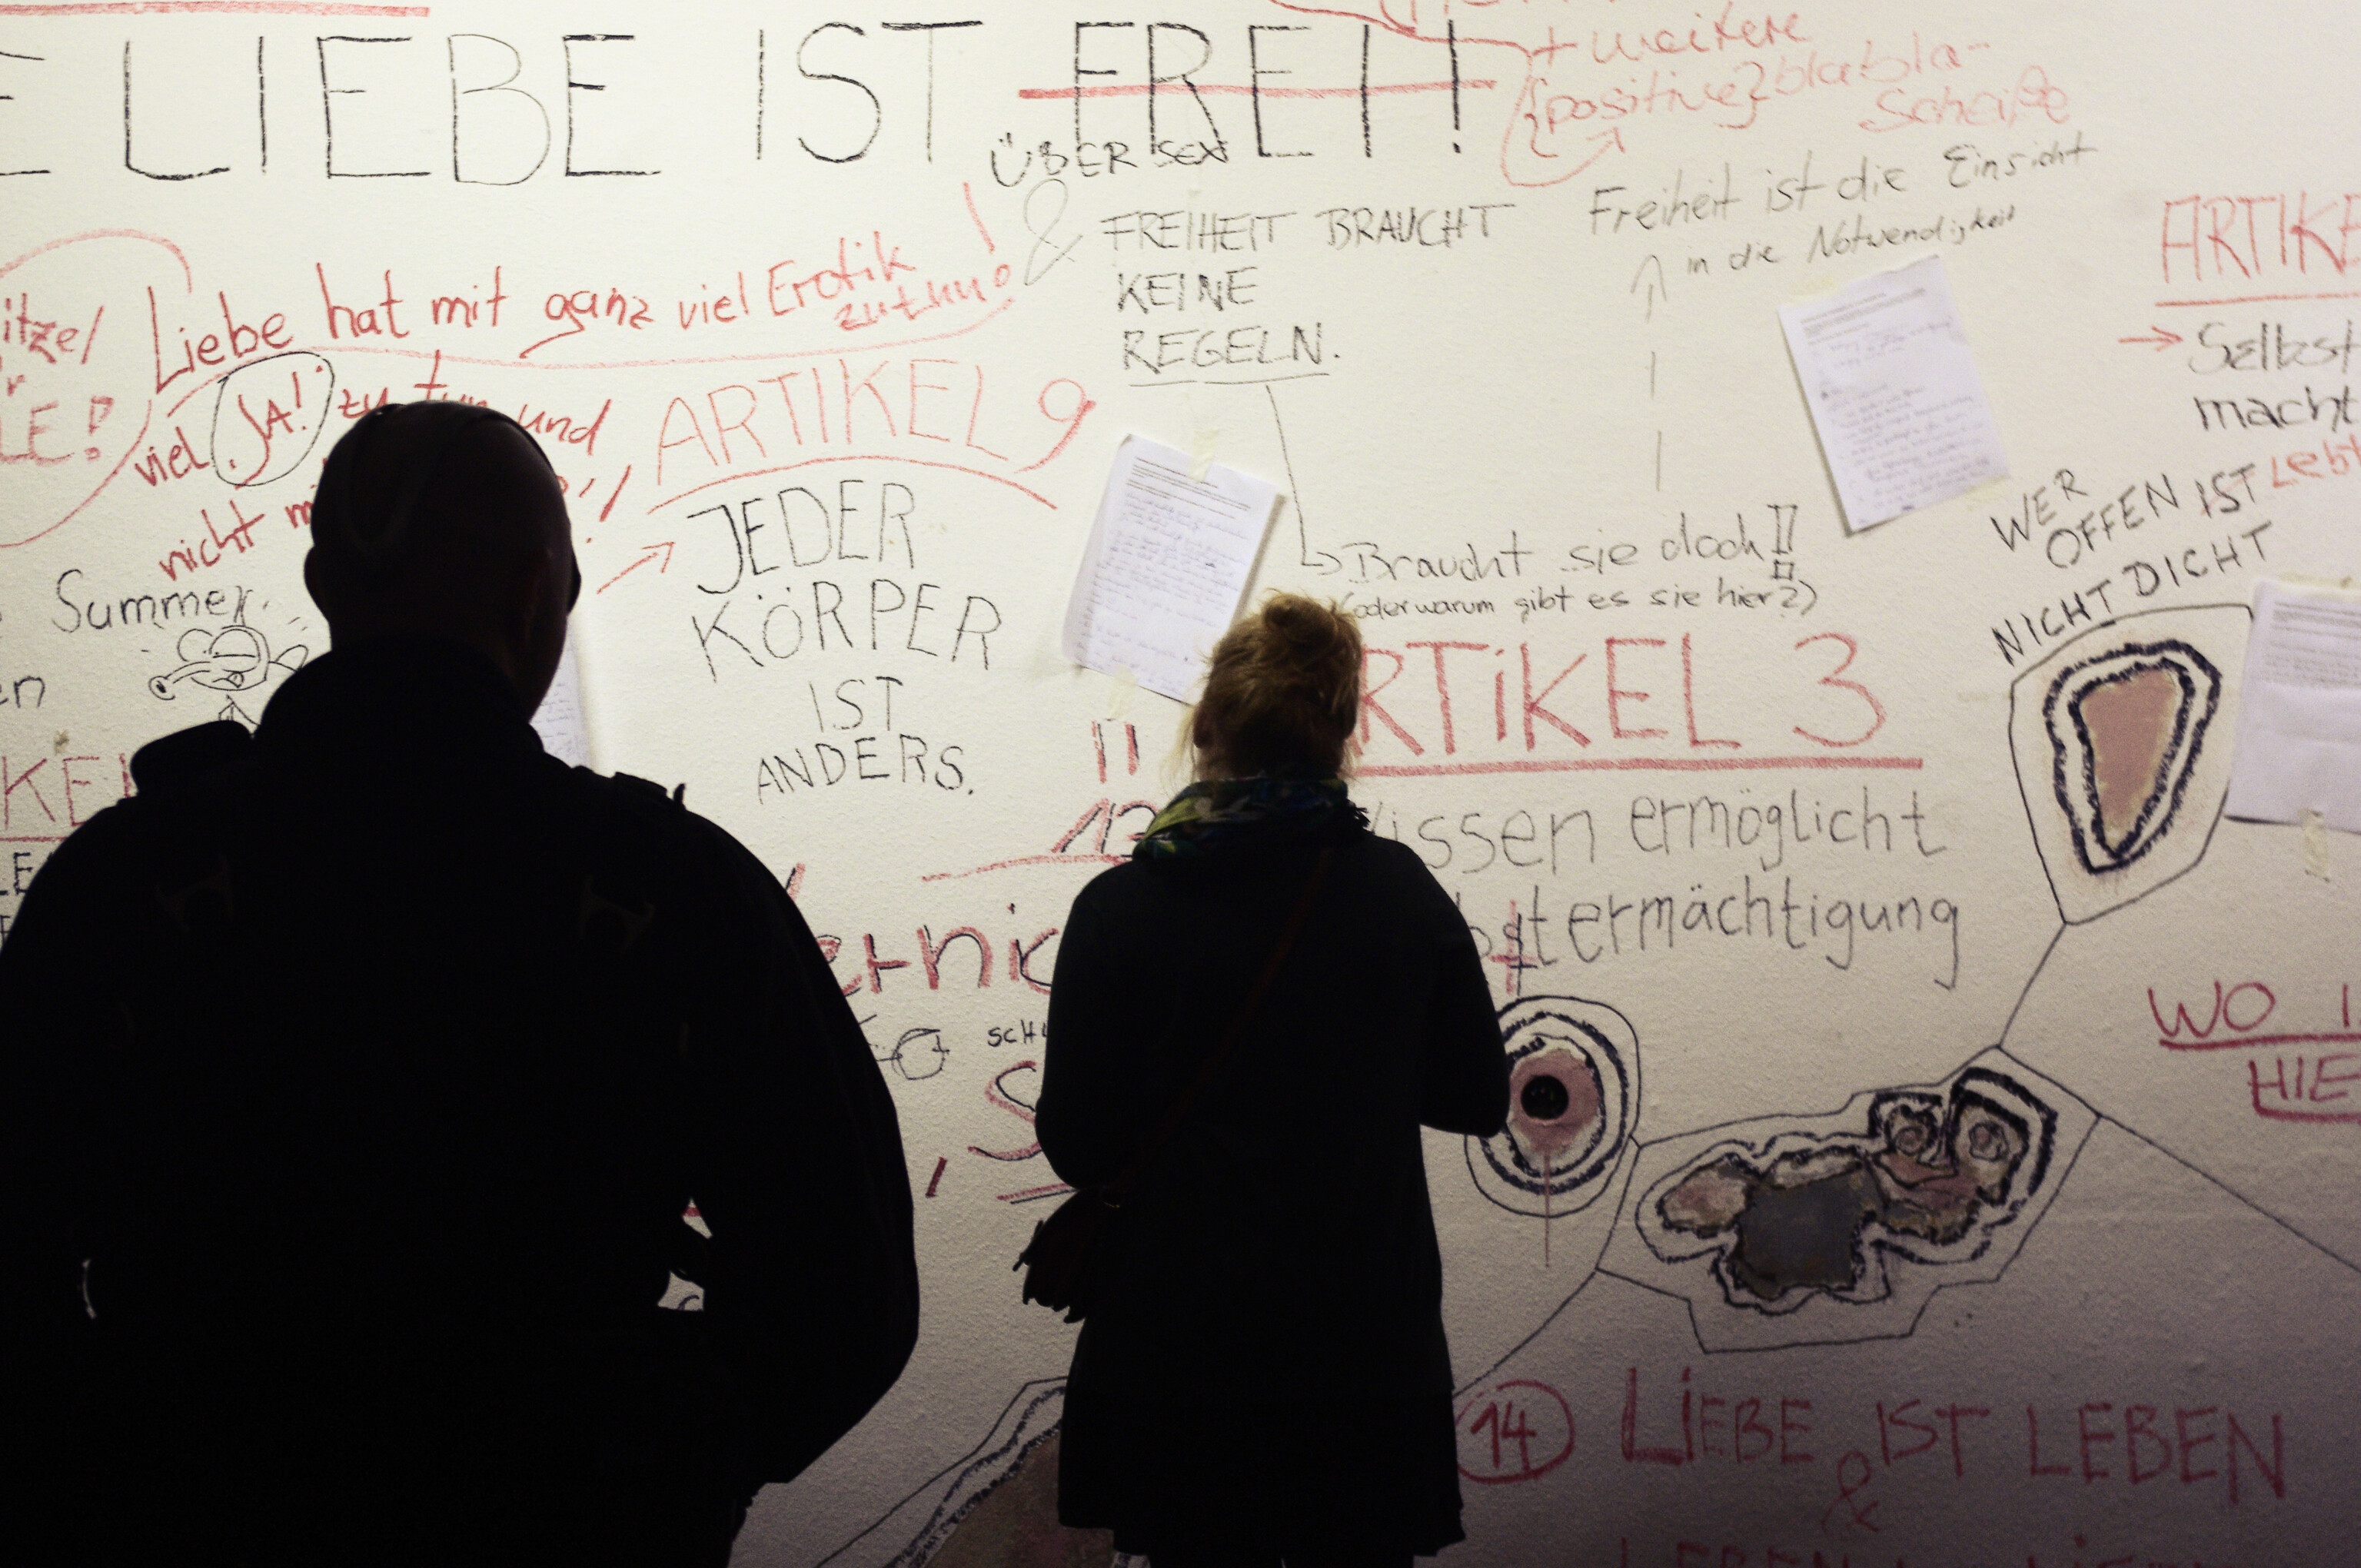 Dieses Bild zeigt zwei Personen, deren Silhouette wir von hinten sehen. Sie blicken auf eine weiße Wand, auf der mehrere Botschaften in schwarzer und roter Schrift stehen.